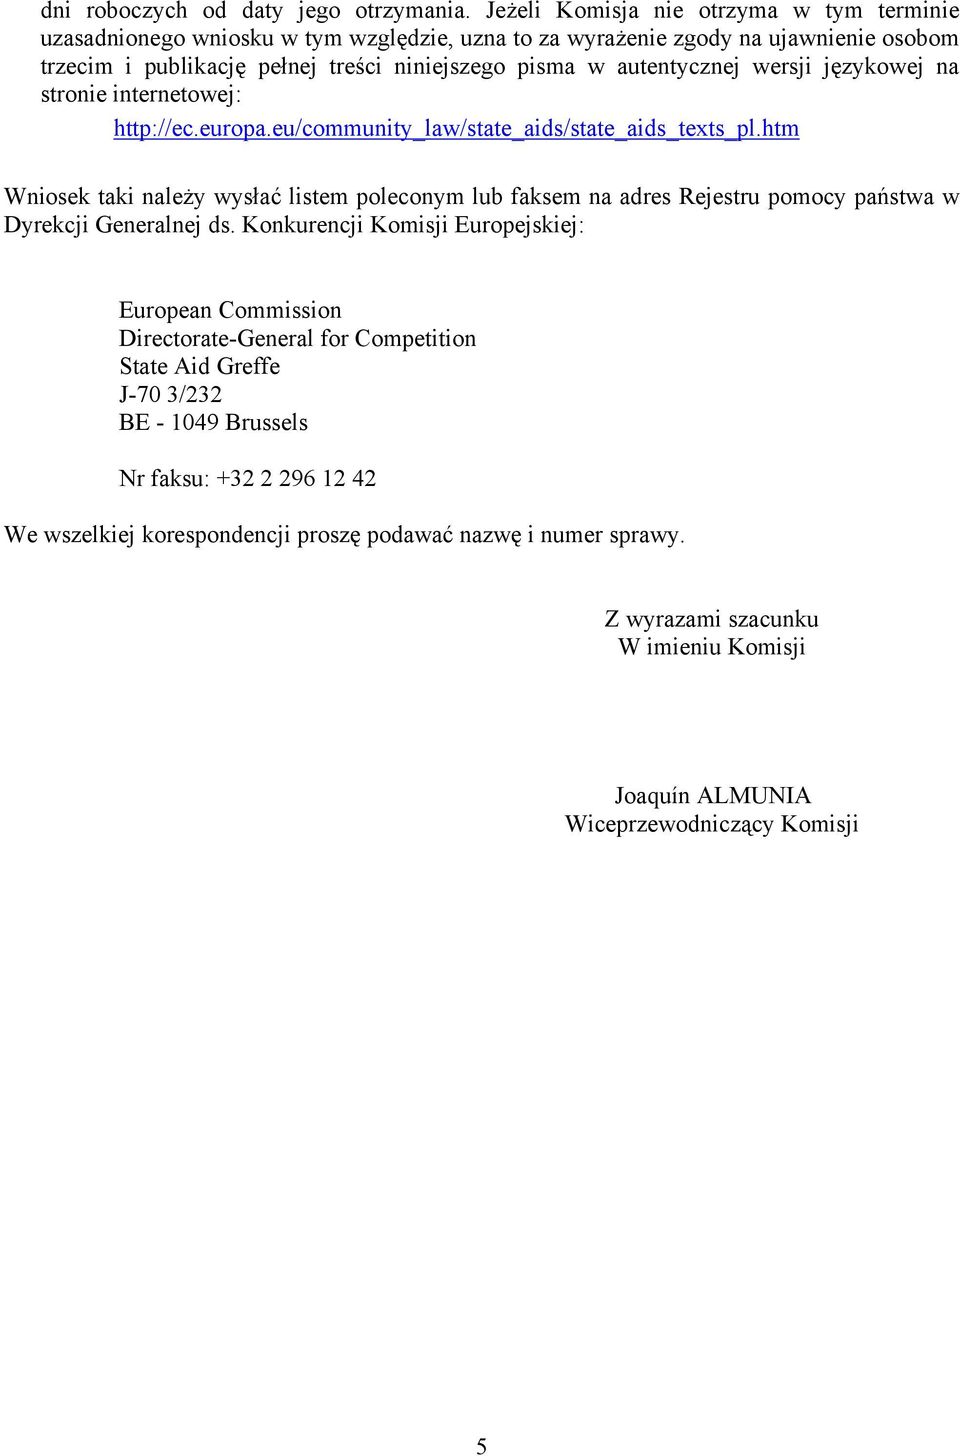 autentycznej wersji językowej na stronie internetowej: http://ec.europa.eu/community_law/state_aids/state_aids_texts_pl.